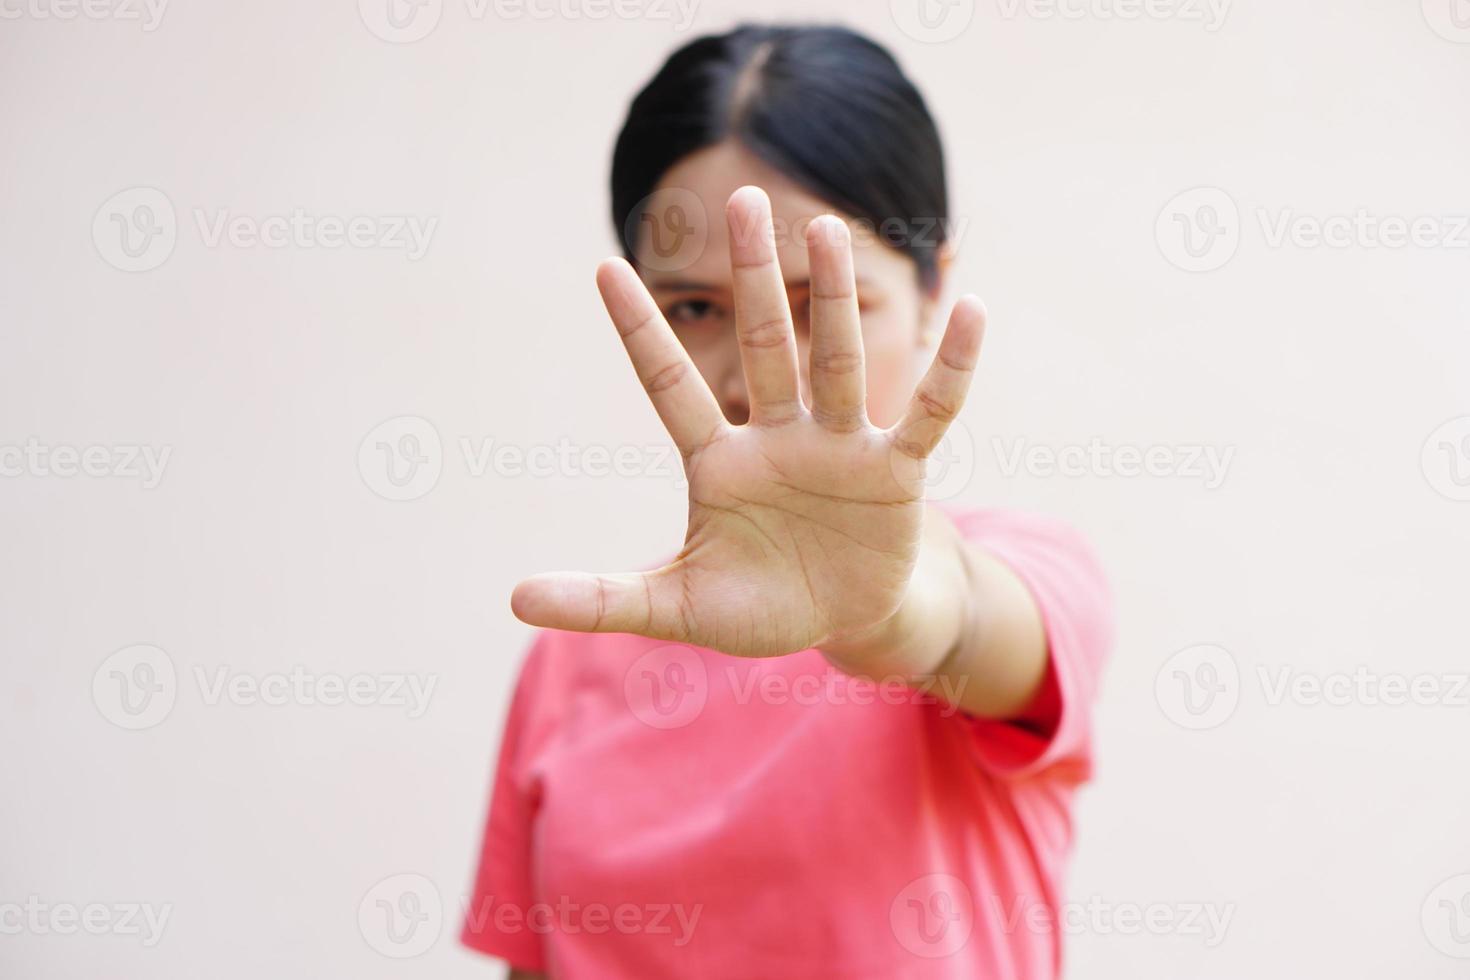 vrouw stak haar hand op om te ontmoedigen, campagne stop geweld tegen vrouwen foto